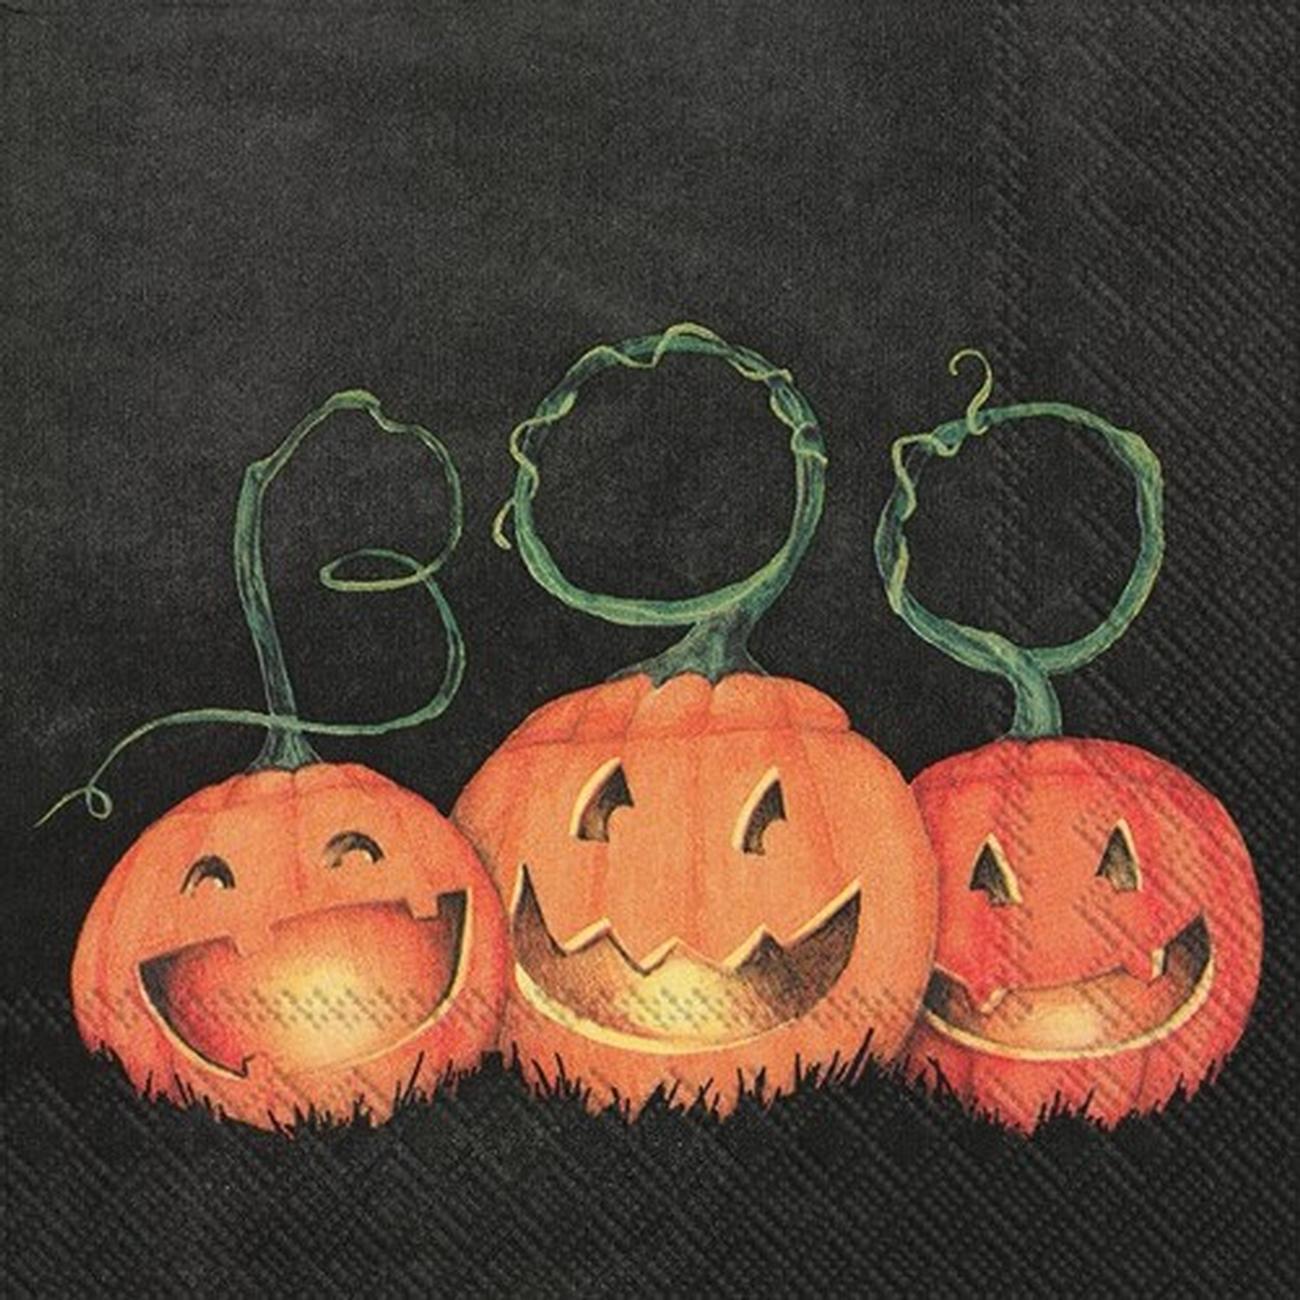 ihr-cocktail-napkins-boo-pumpkins-halloween - IHR Cocktail Napkins Boo Pumpkins